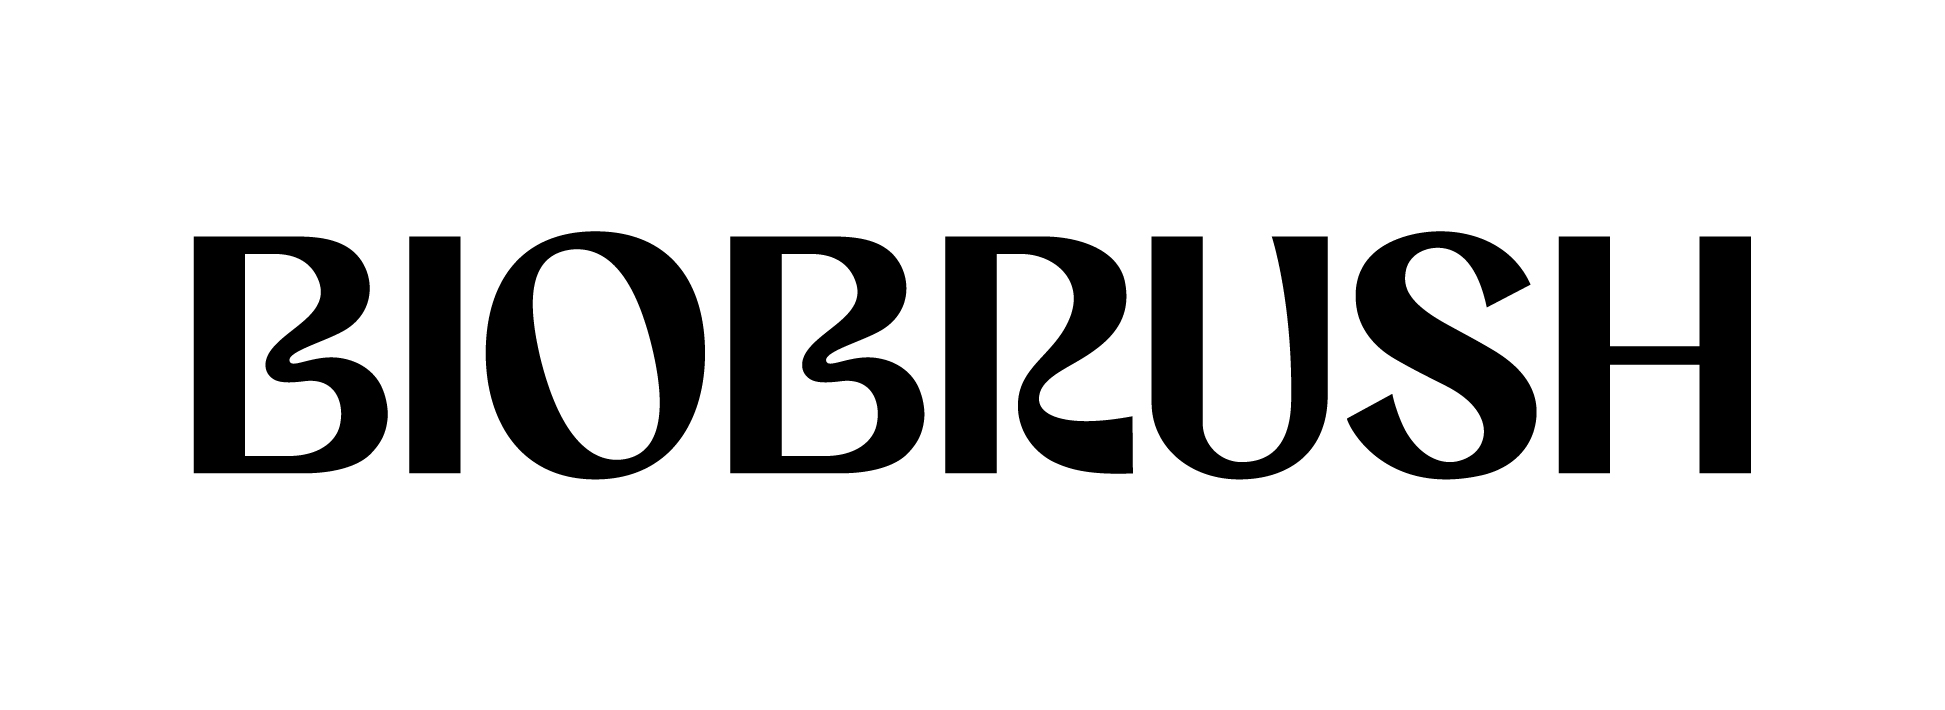 Biobrush